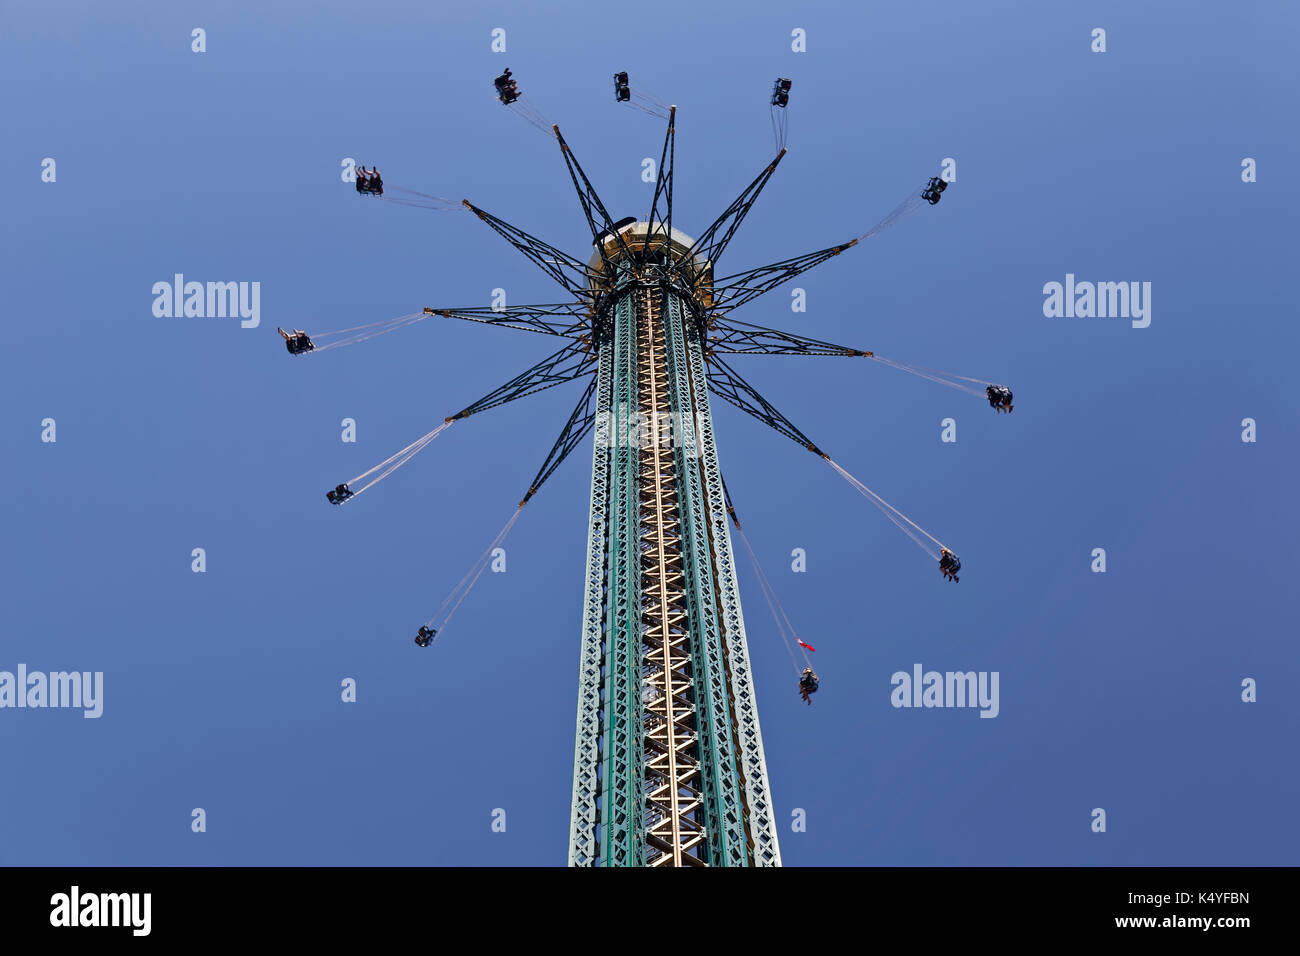 Prater Tower, chairoplane, Wiener Prater or Wurstelprater, amusement park, Vienna, Austria Stock Photo